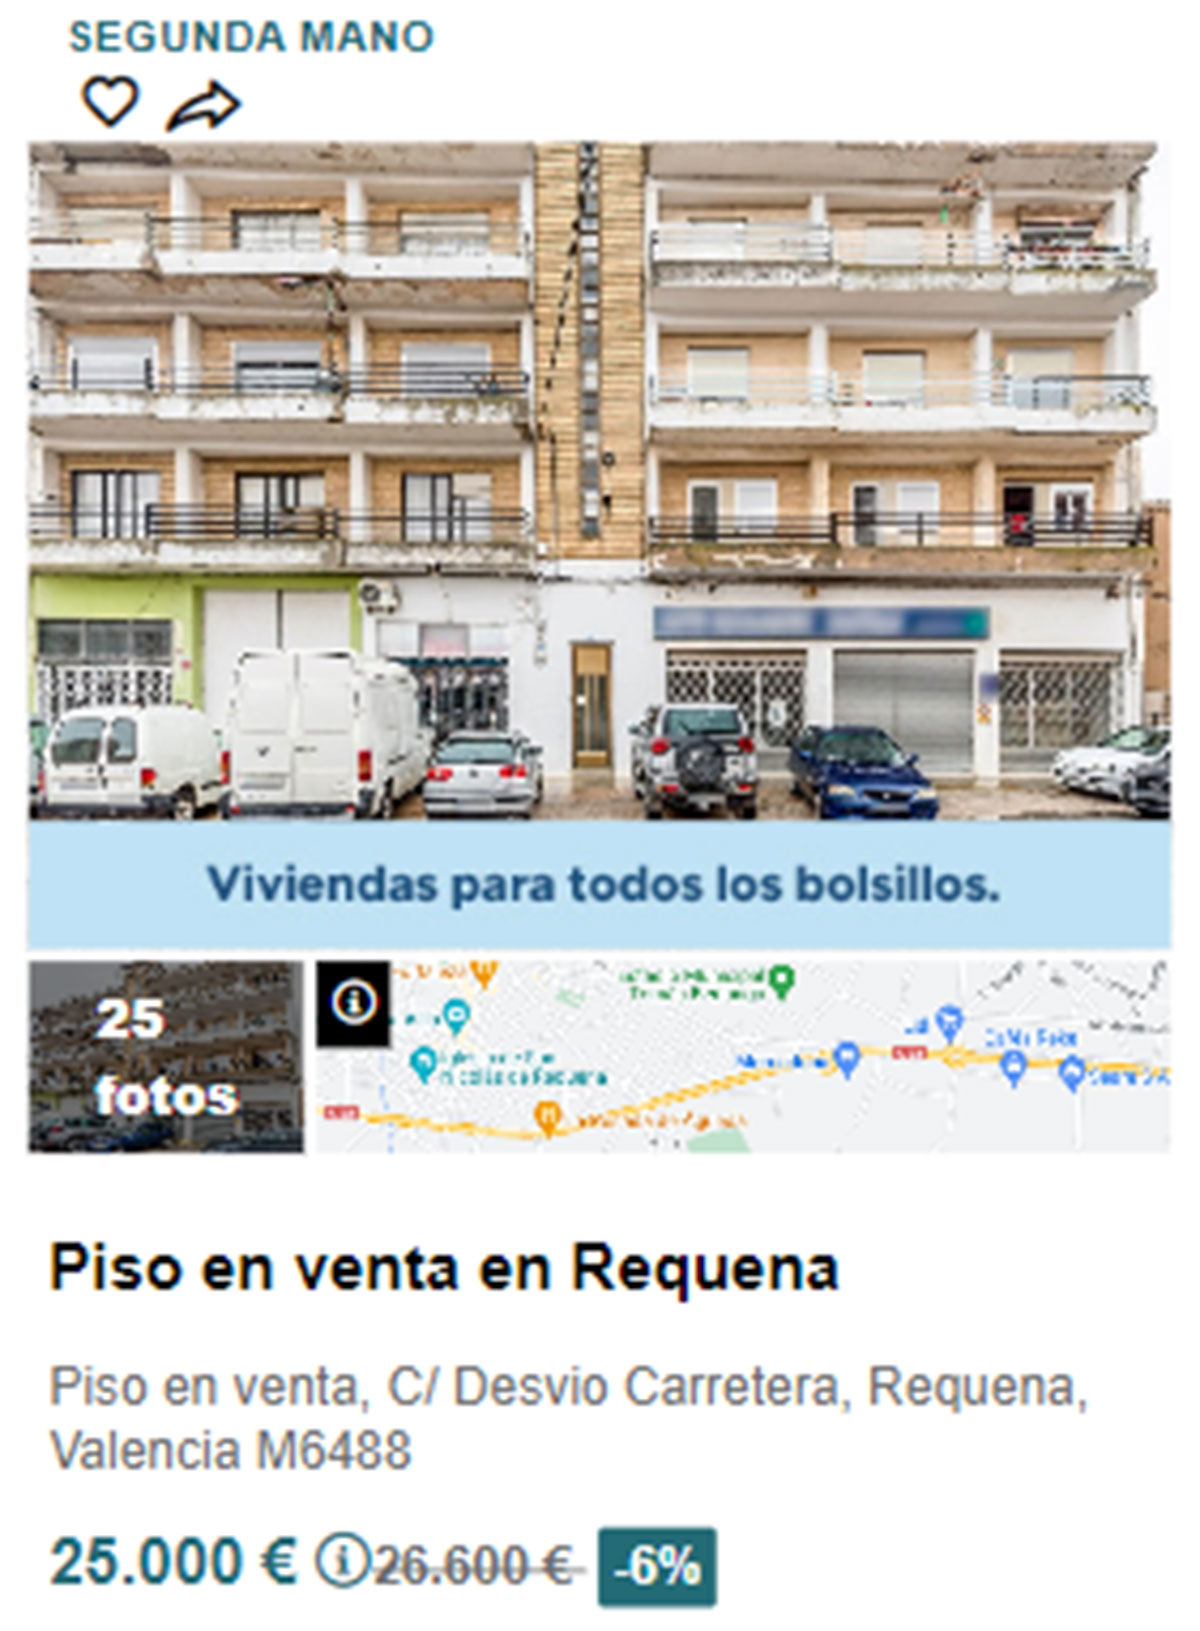 Piso en pueblos de Valencia por 25.000 euros